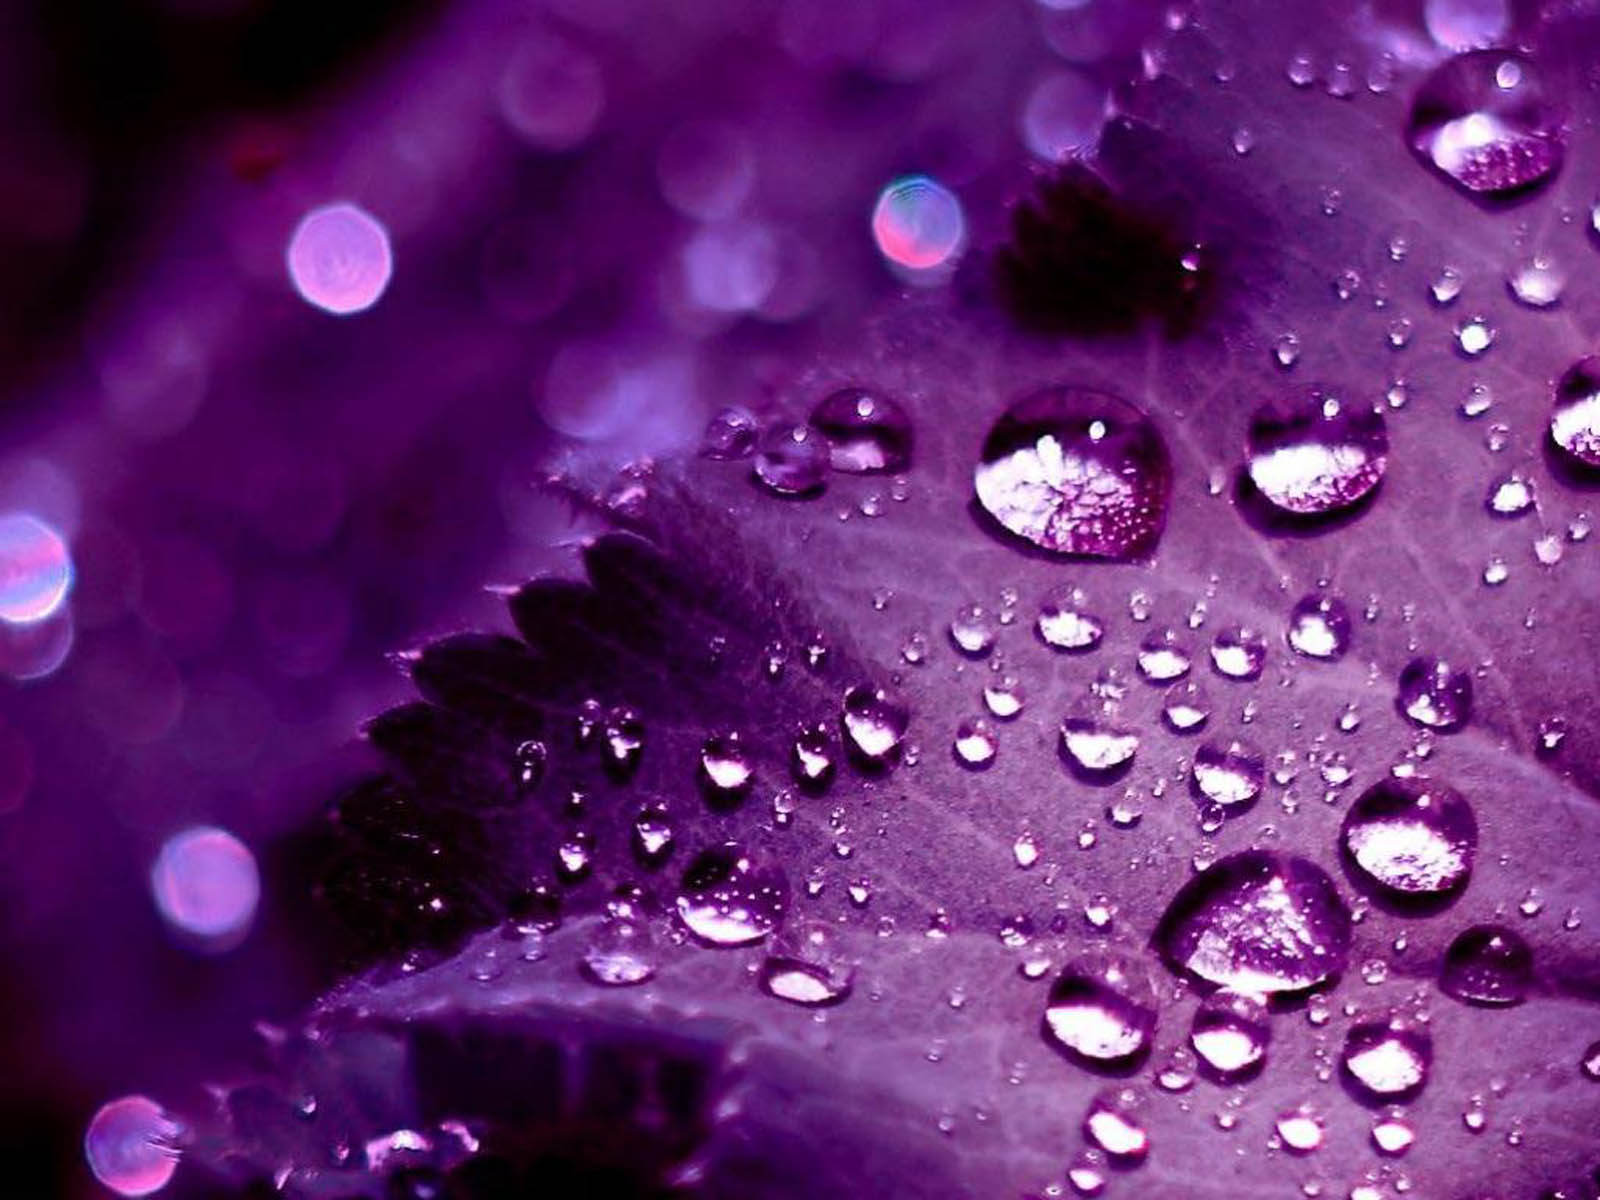 48+] Cool Purple Wallpapers HD - WallpaperSafari